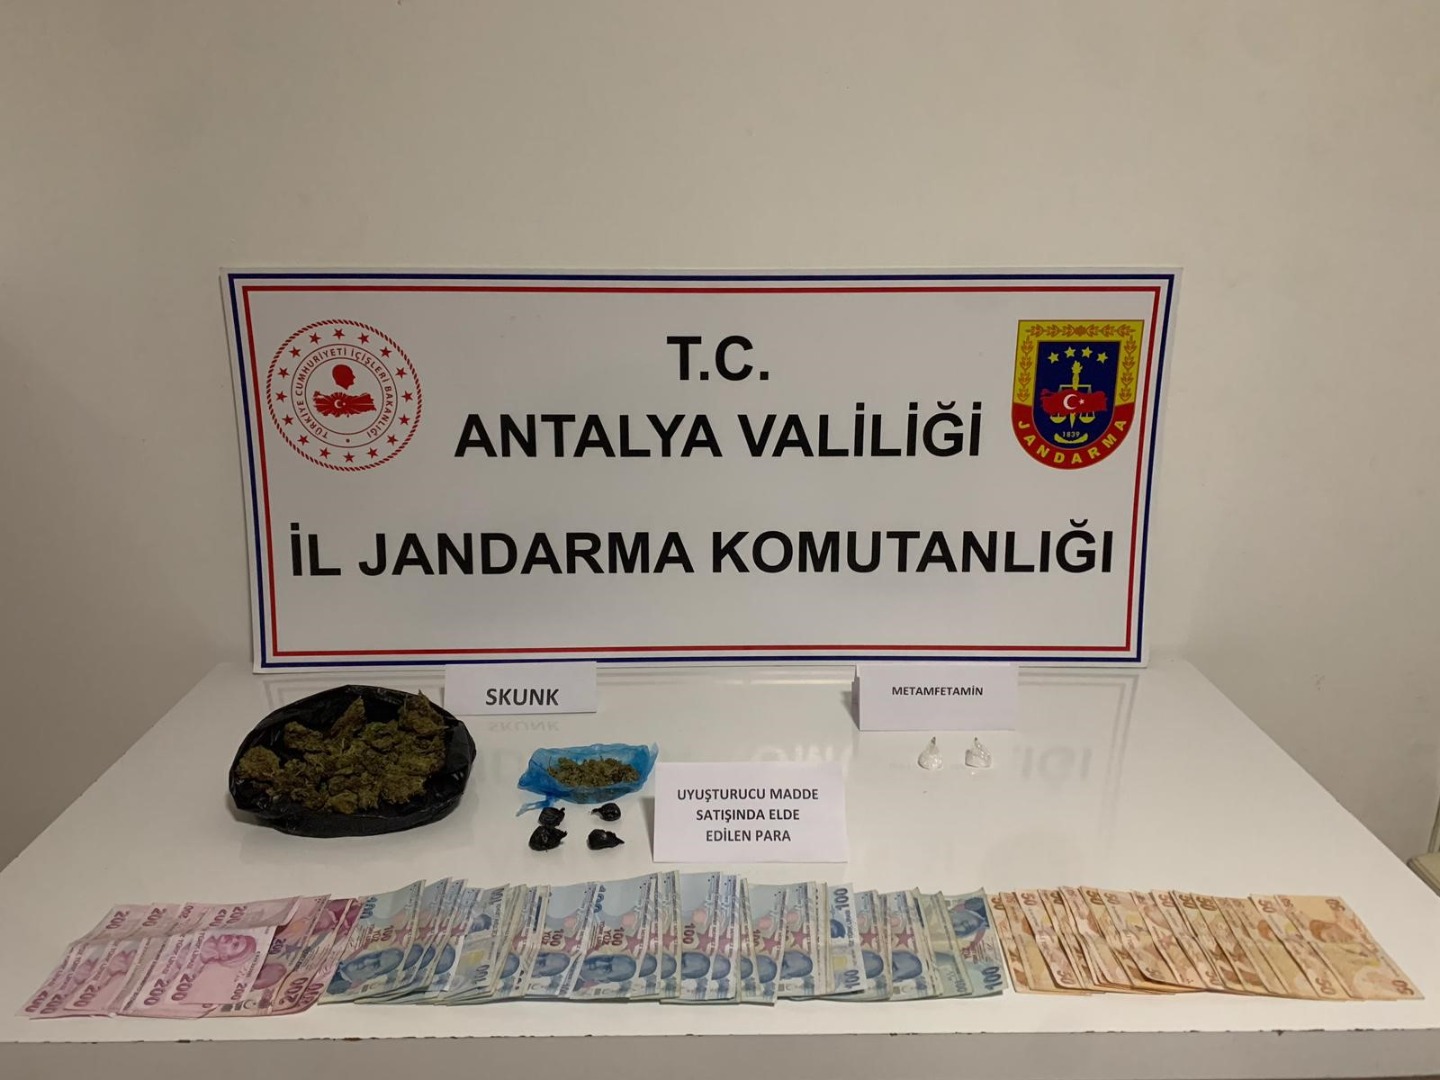 Antalya'da uyuşturucu operasyonu: 3 gözaltı